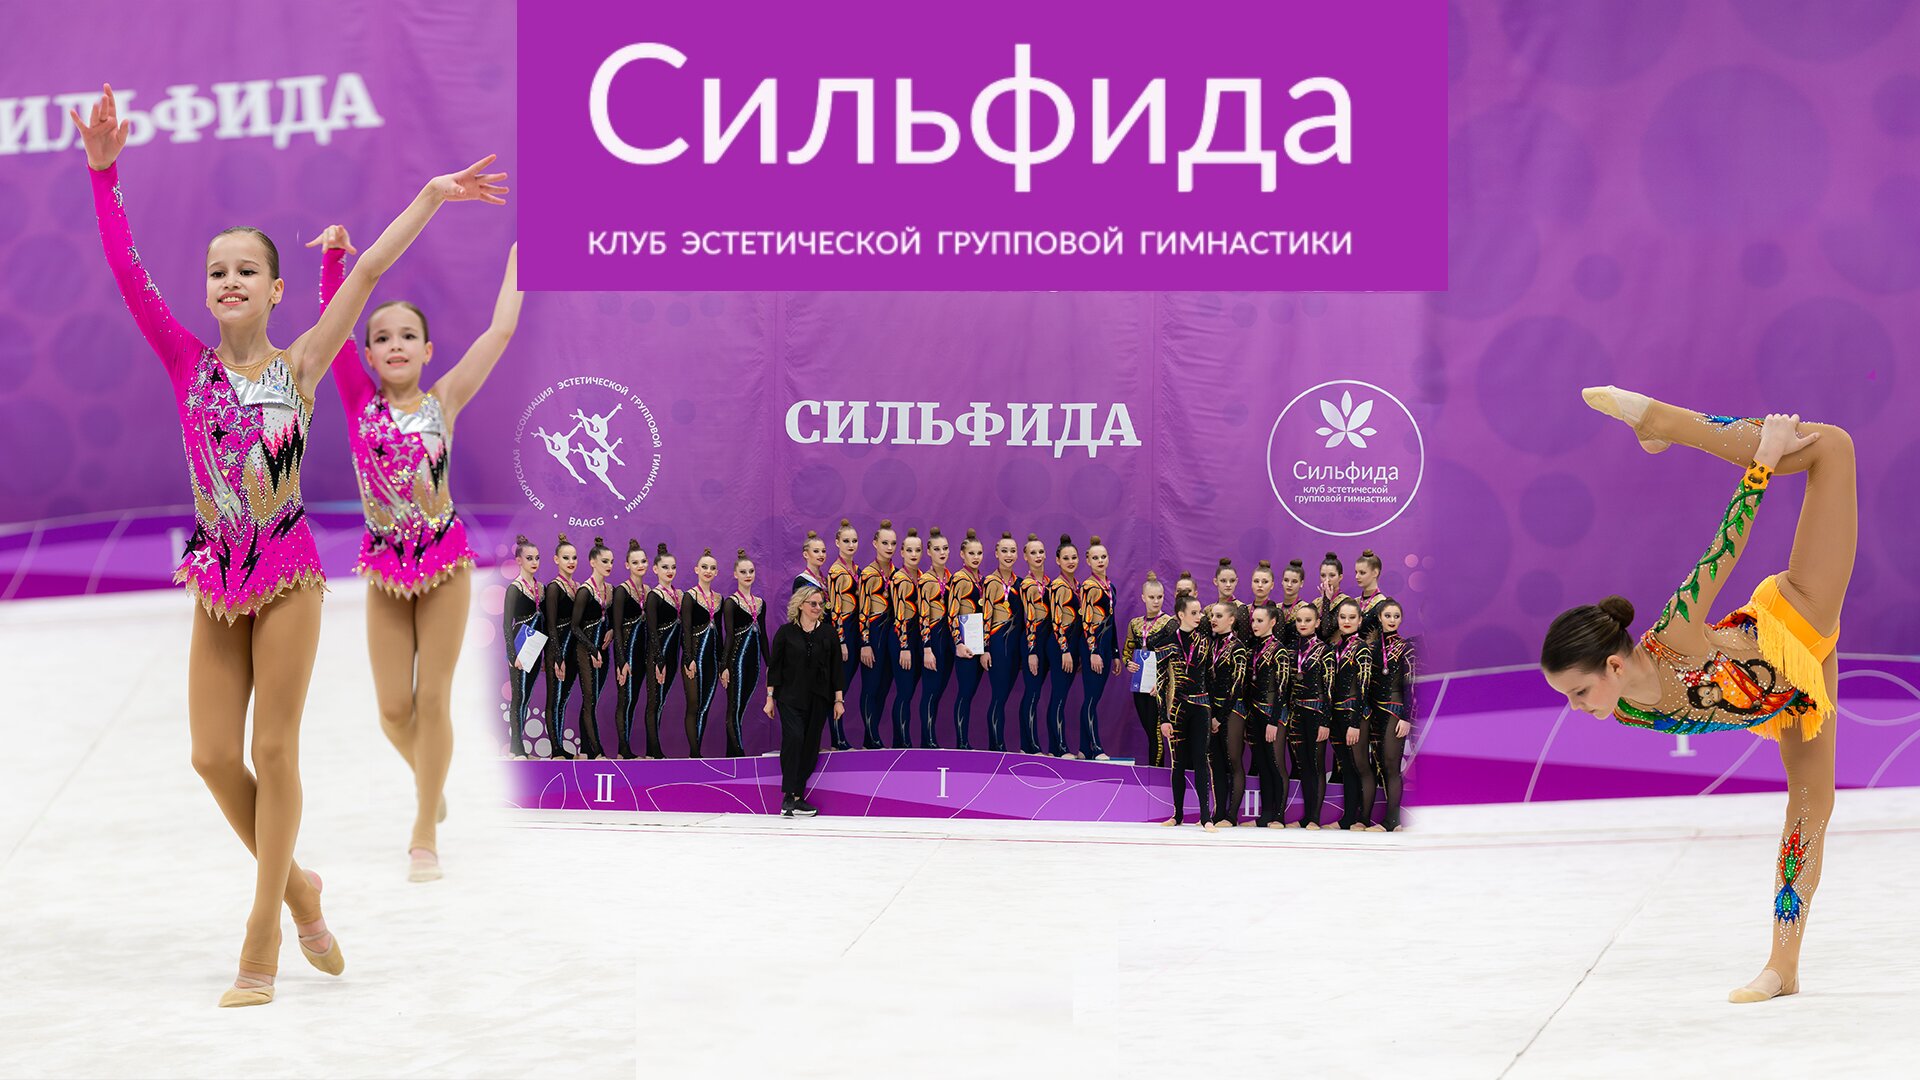 Более 1200 участниц и бронза белорусок. Турнир по эстетической гимнастике